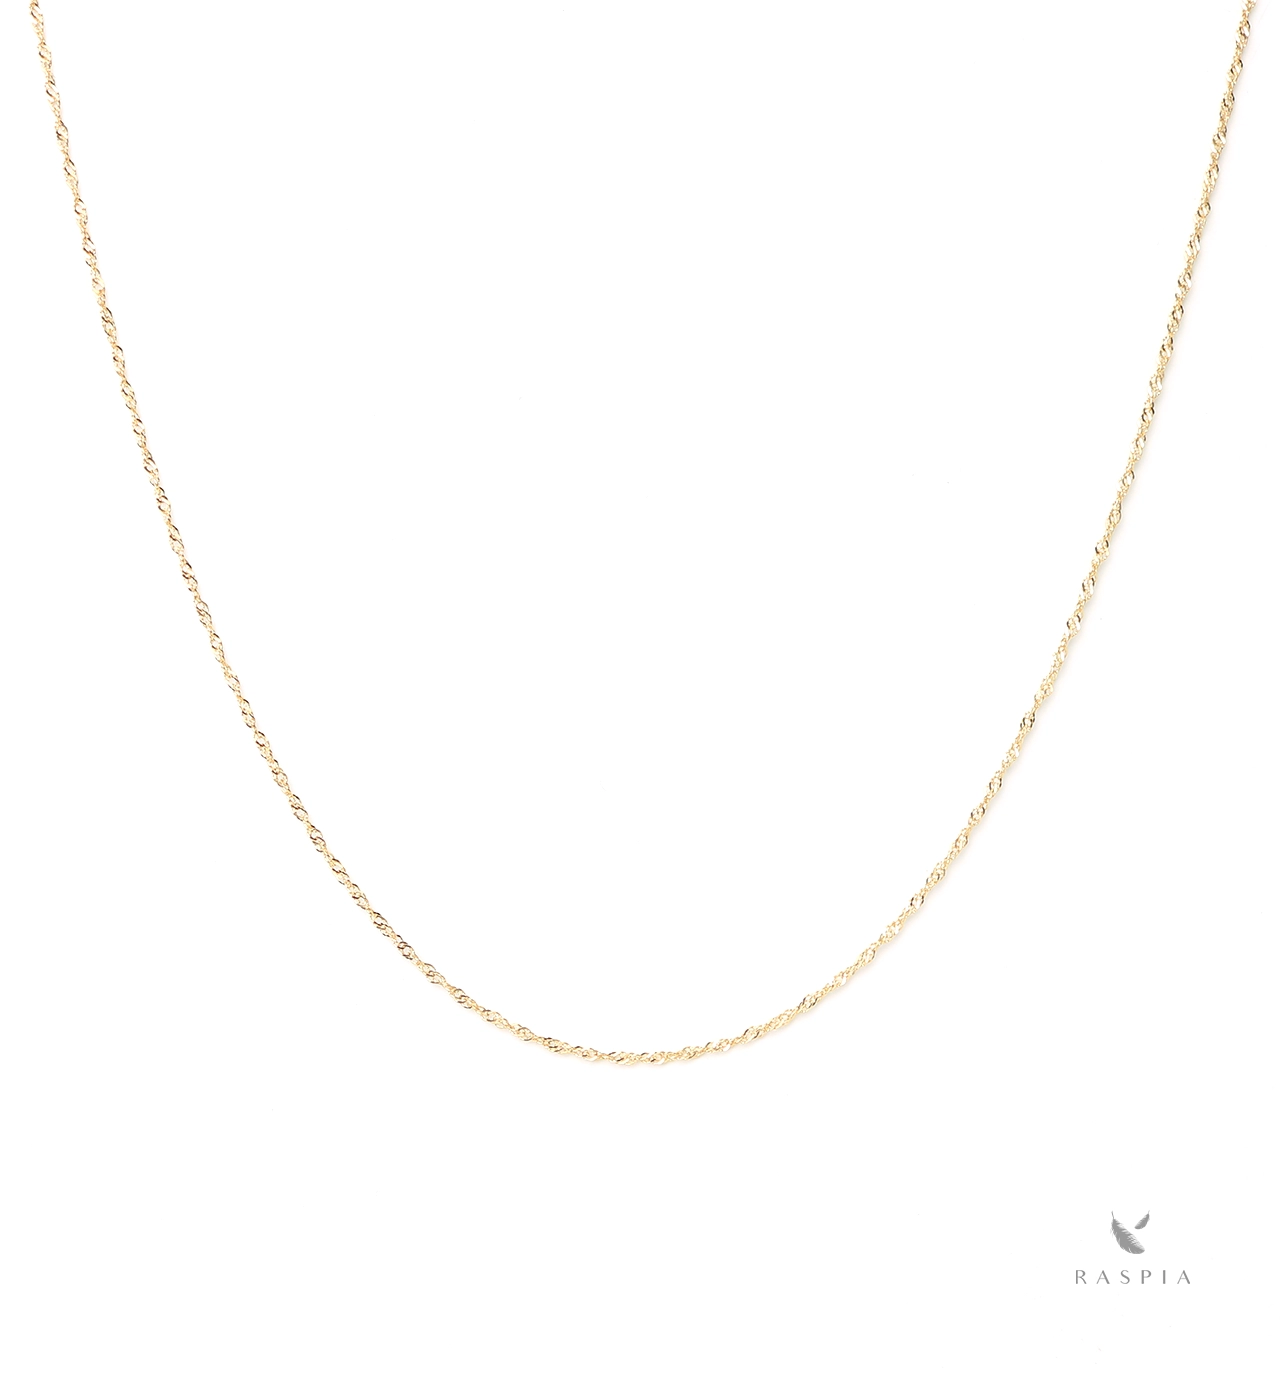 日本製】K18YG (18金イエローゴールド) ネックレス＊スクリューチェーン(全長40cm) ジュエリーブランド「RASPIA Jewelry」